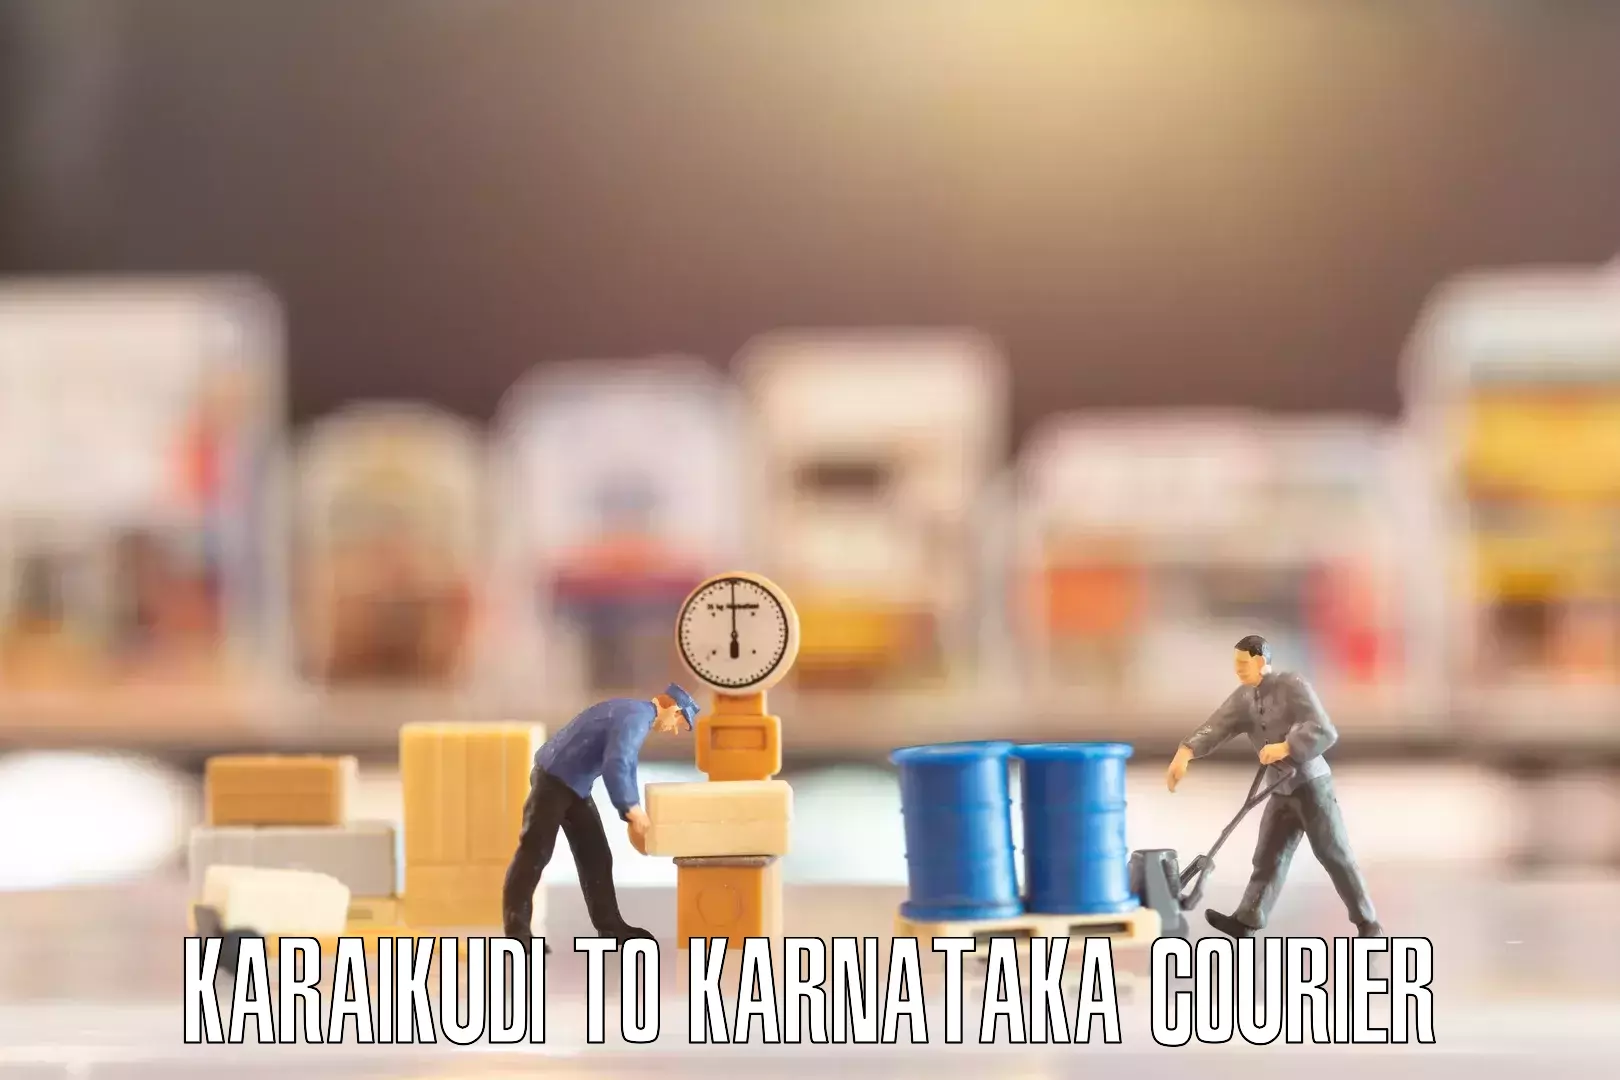 Moving and handling services Karaikudi to Karnataka